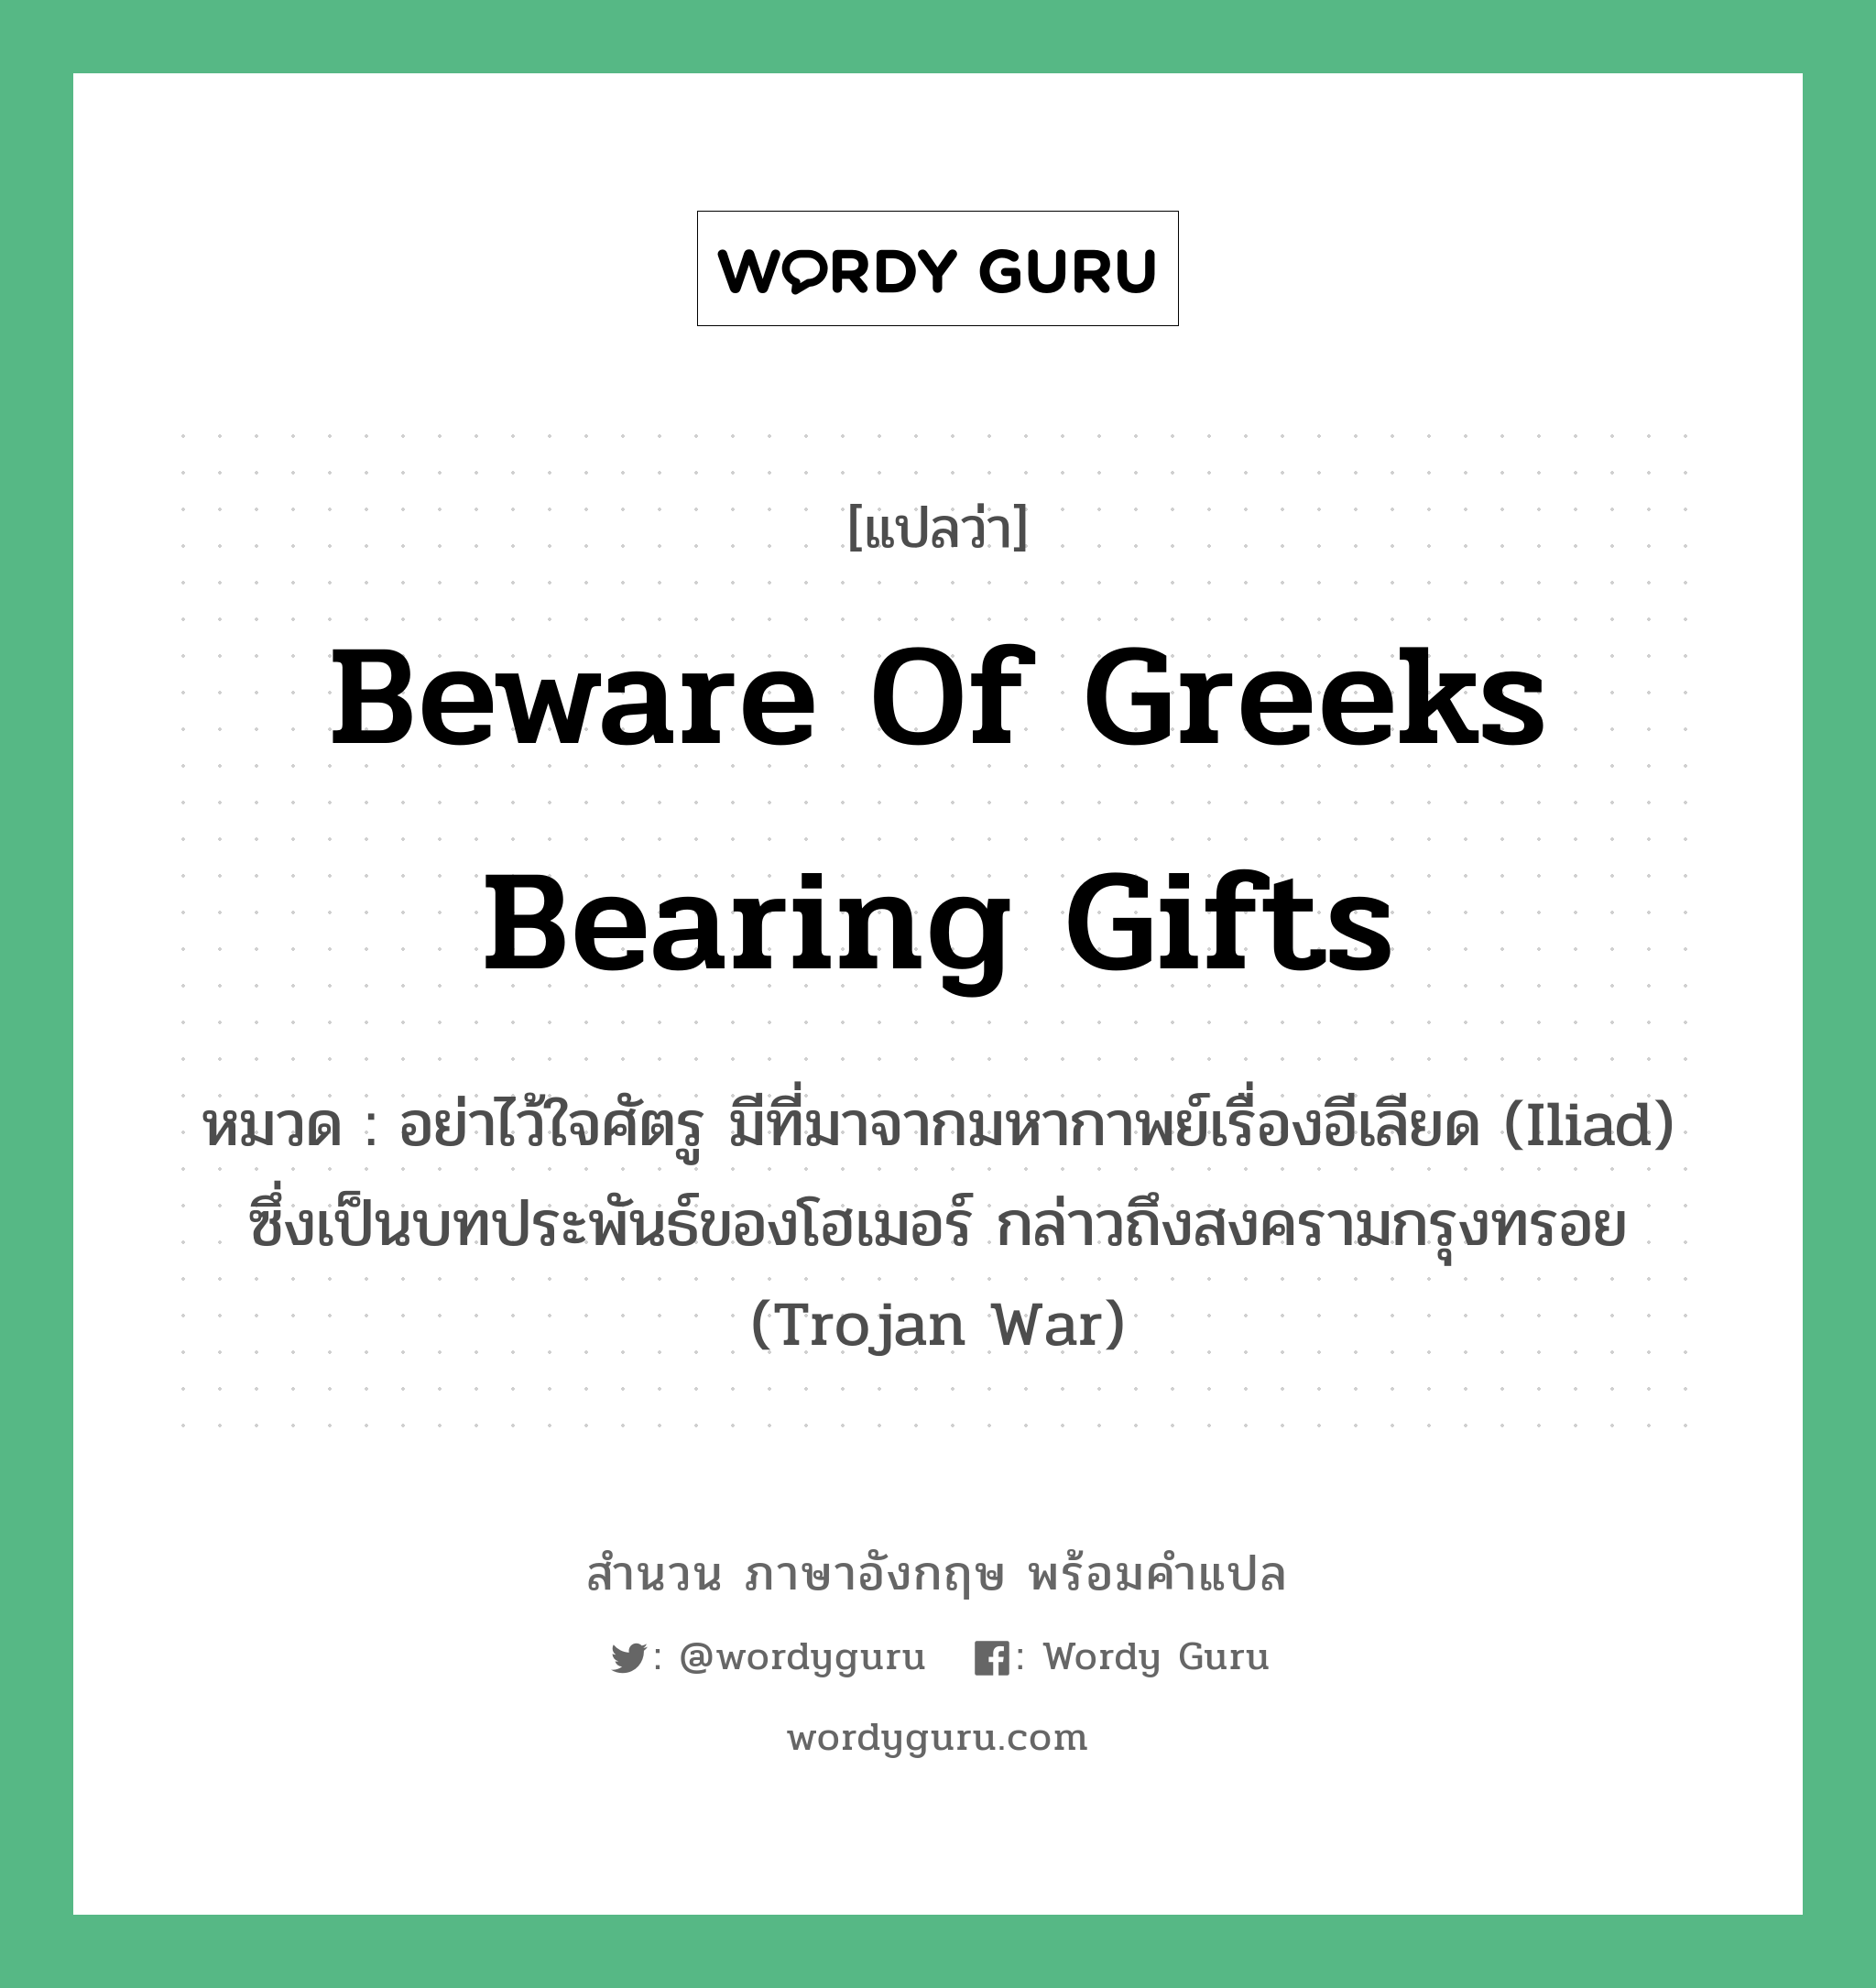 Beware of Greeks bearing gifts แปลว่า?, สำนวนภาษาอังกฤษ Beware of Greeks bearing gifts หมวด อย่าไว้ใจศัตรู มีที่มาจากมหากาพย์เรื่องอีเลียด (Iliad) ซึ่งเป็นบทประพันธ์ของโฮเมอร์ กล่าวถึงสงครามกรุงทรอย (Trojan War)